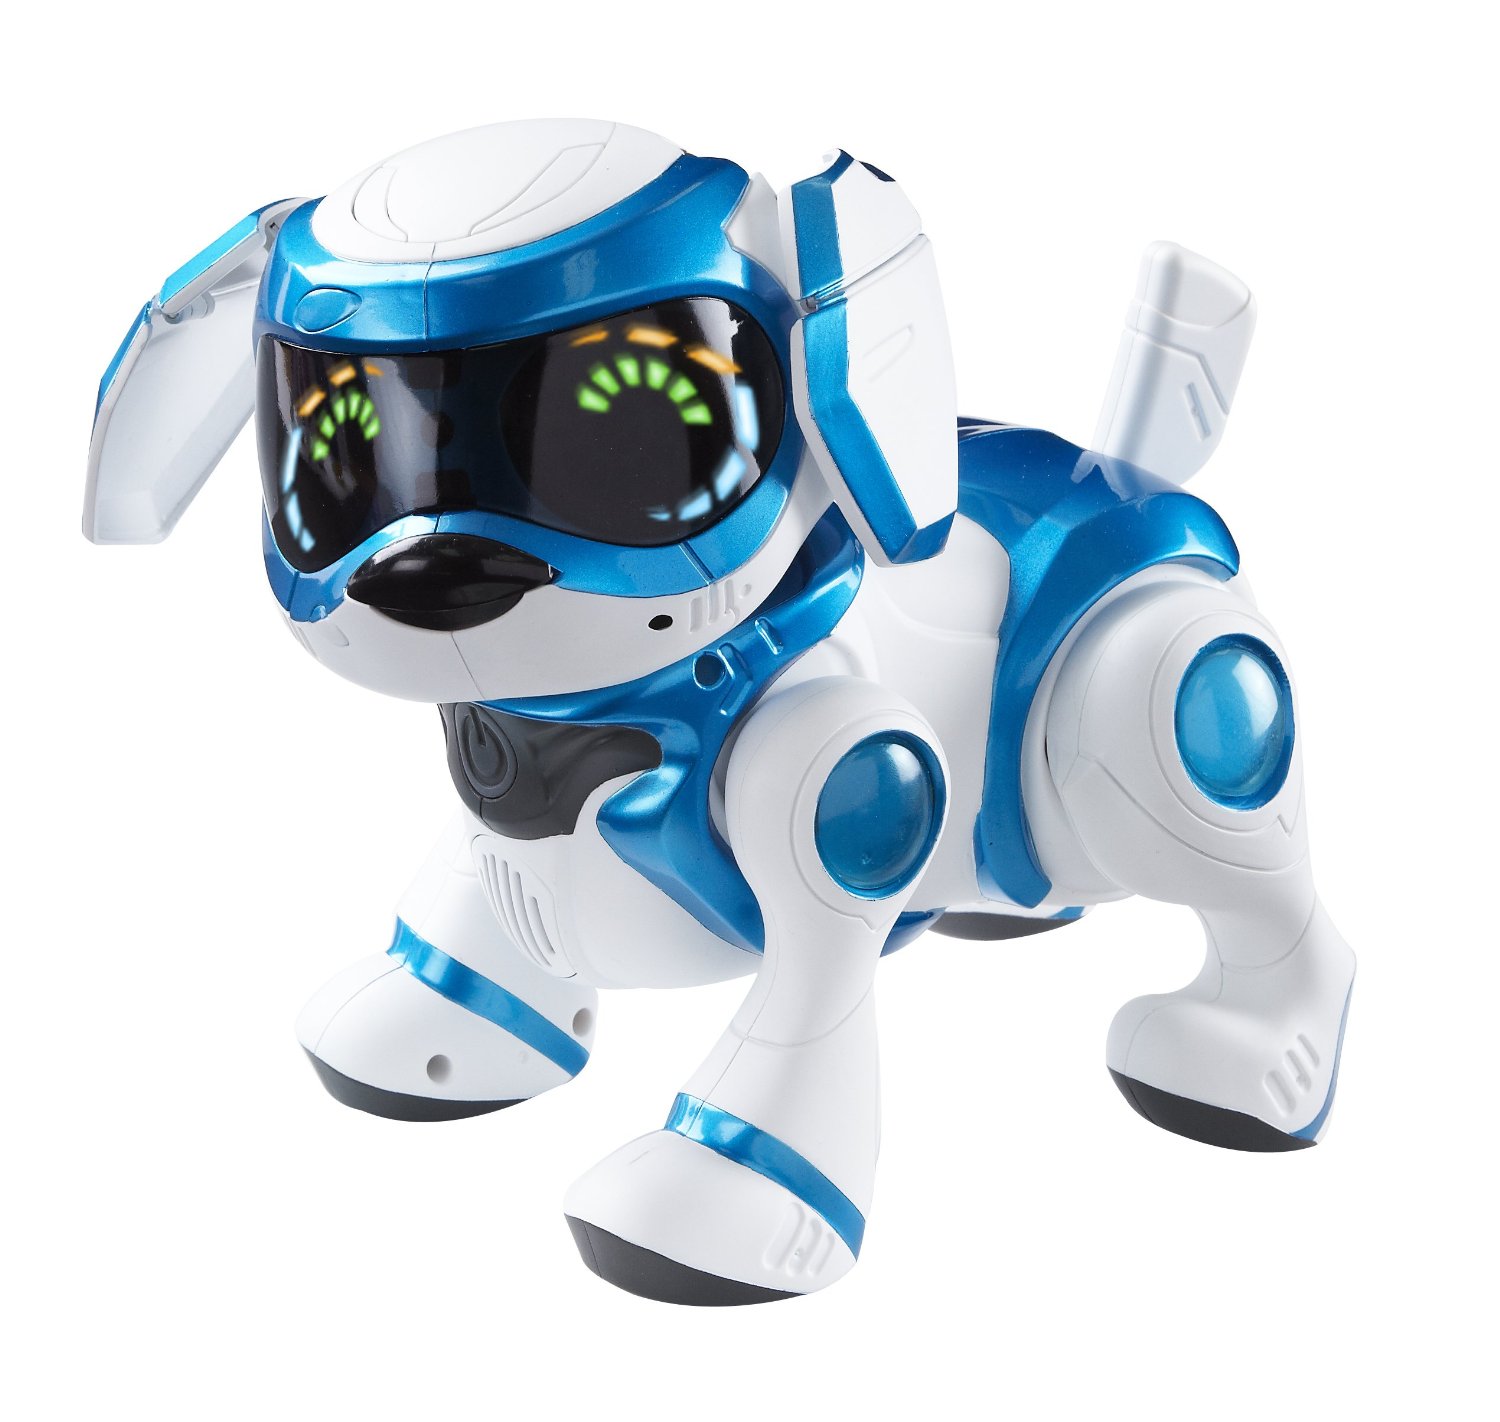 the robot dog